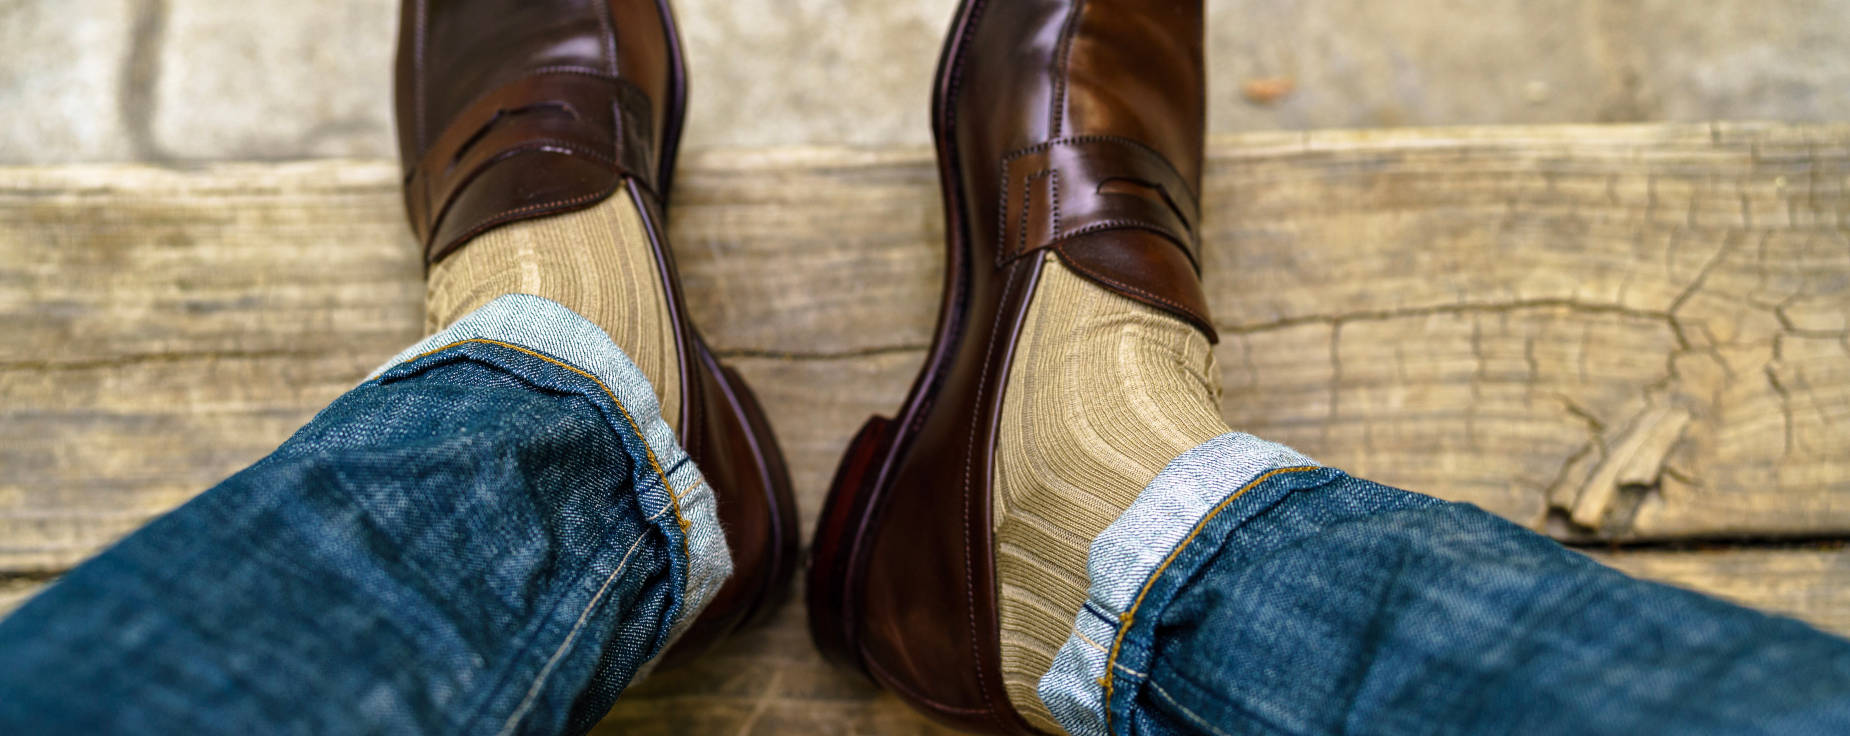 business casual socks for men